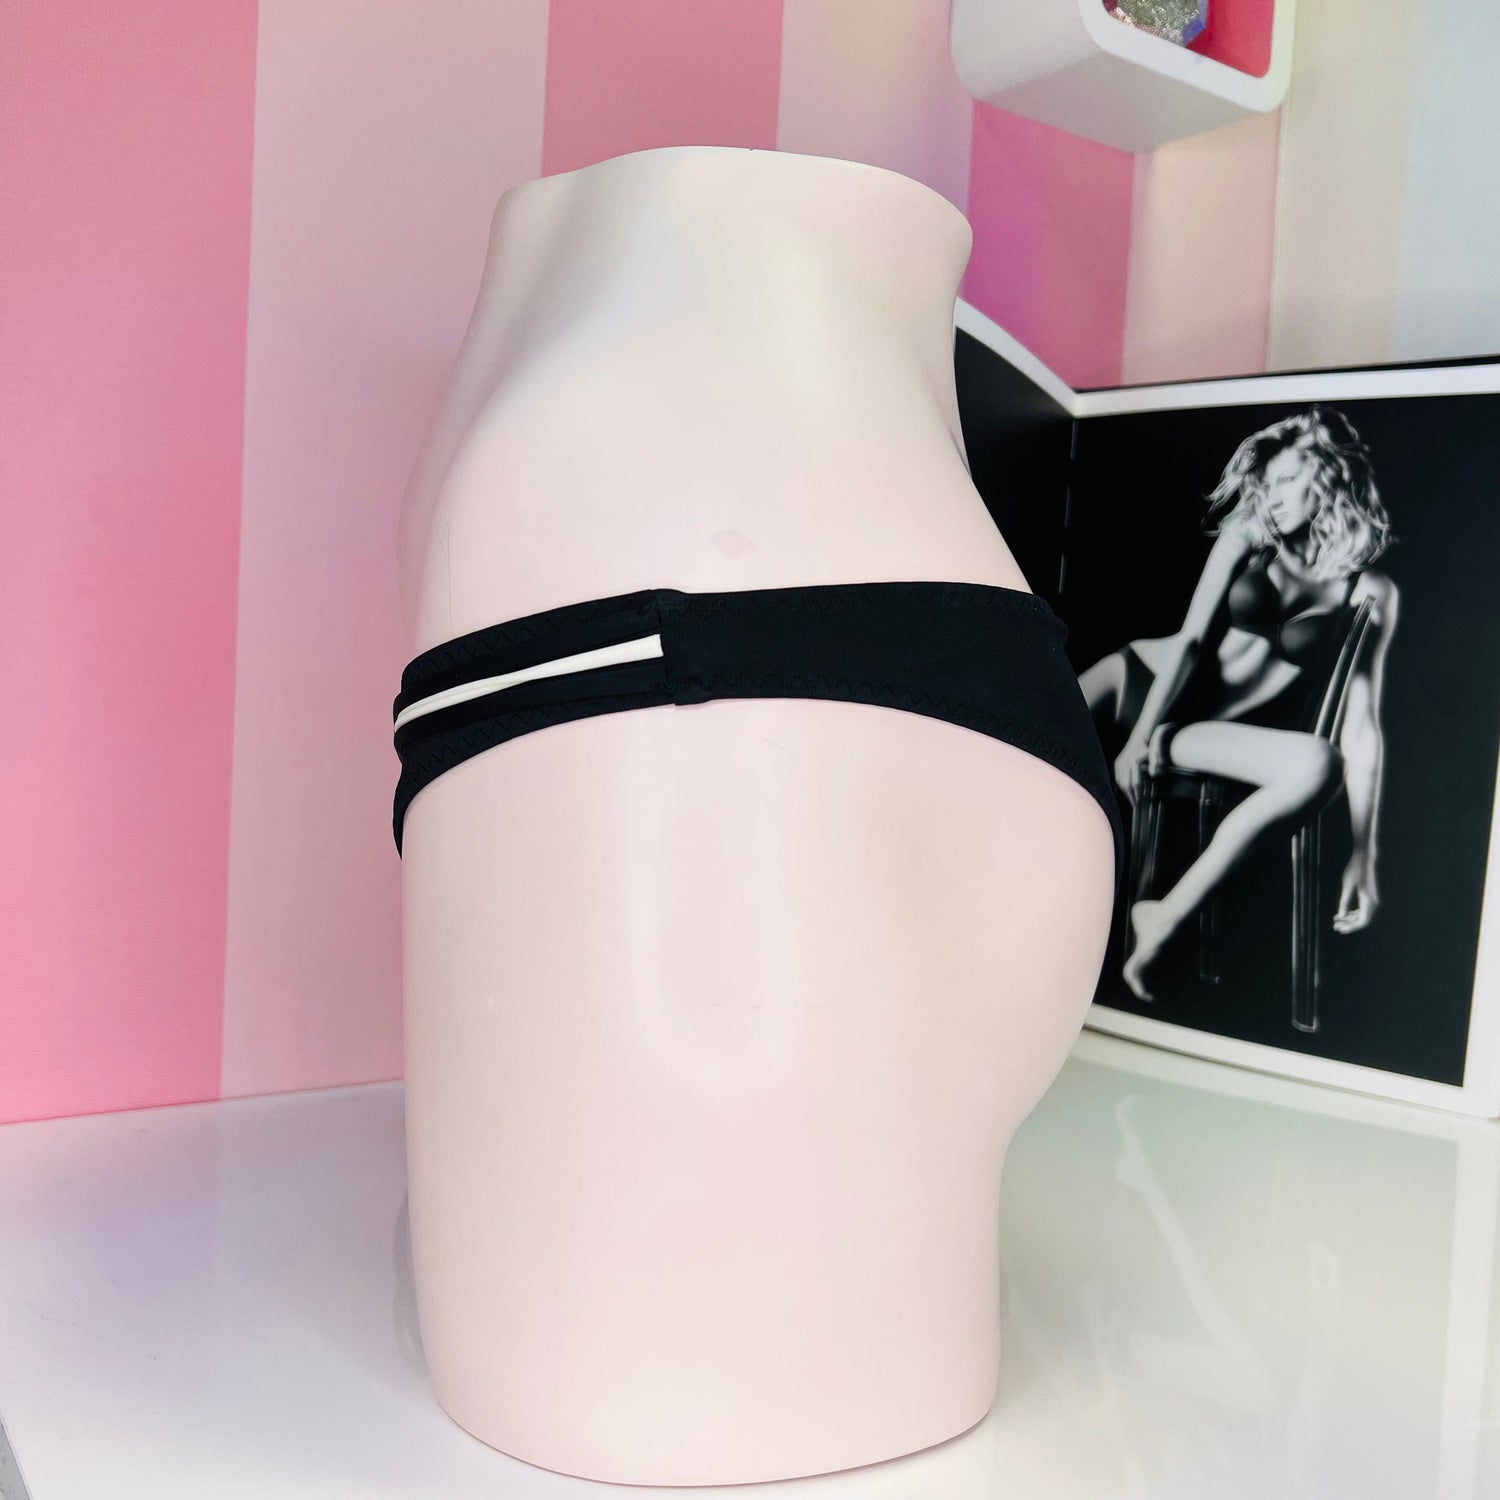 Spodní díl kalhotek s ozdobnými šňůrkami - plavek Victoria’s Secret